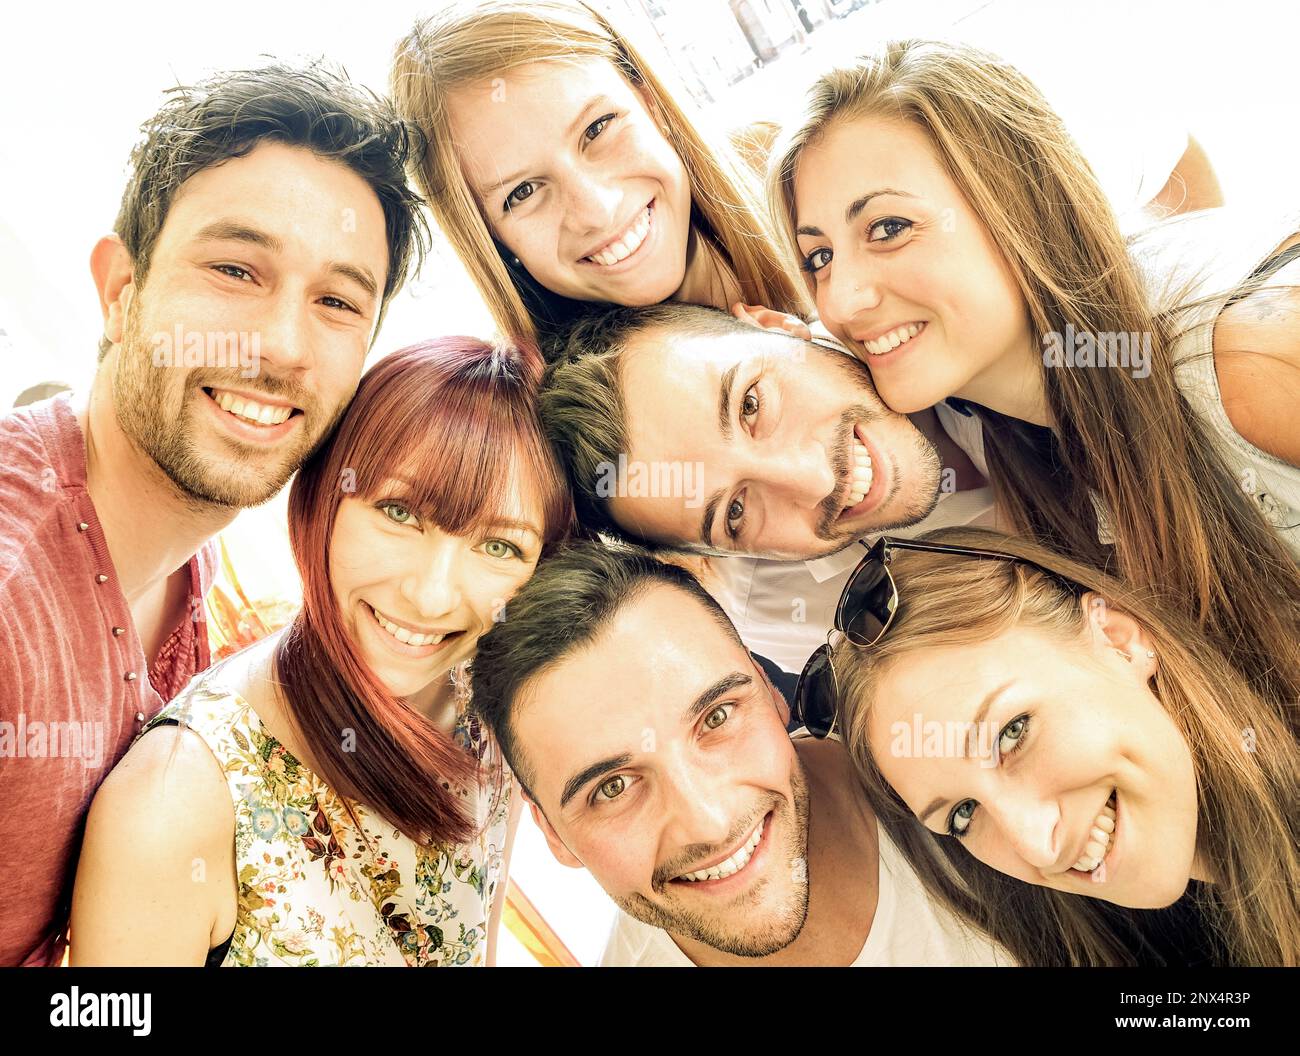 Fröhliche beste Freunde Selfie im Freien mit Hintergrundbeleuchtung im Frühling - Freundschafts- und Glücksgefühl-Konzept, bei dem junge Leute Spaß miteinander haben Stockfoto